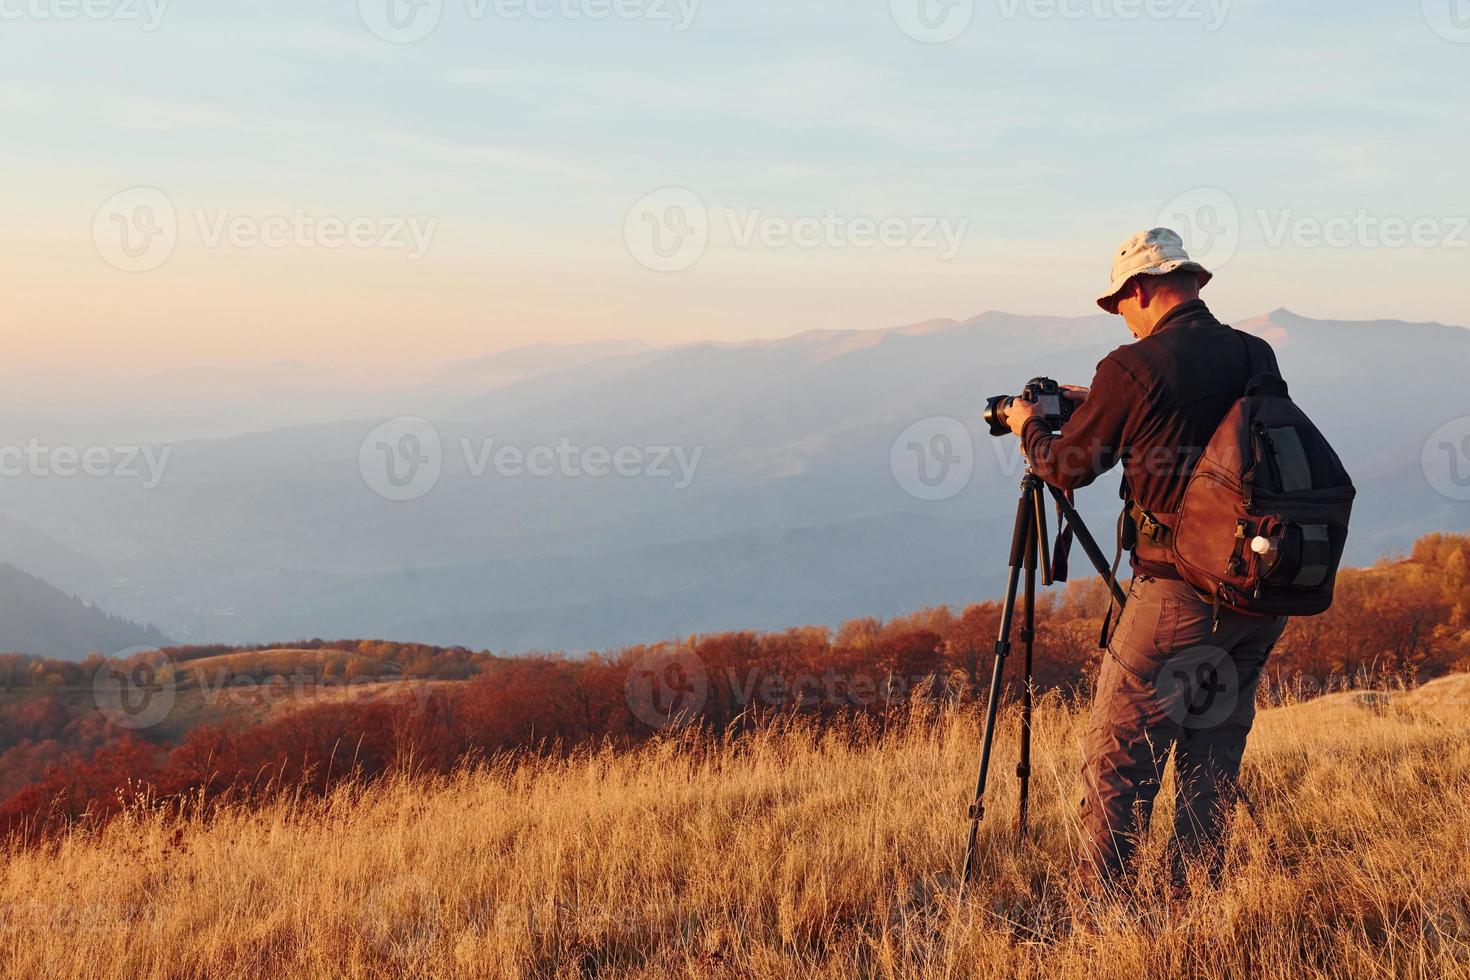 mannetje fotograaf staand en werken Bij majestueus landschap van herfst bomen en bergen door de horizon foto